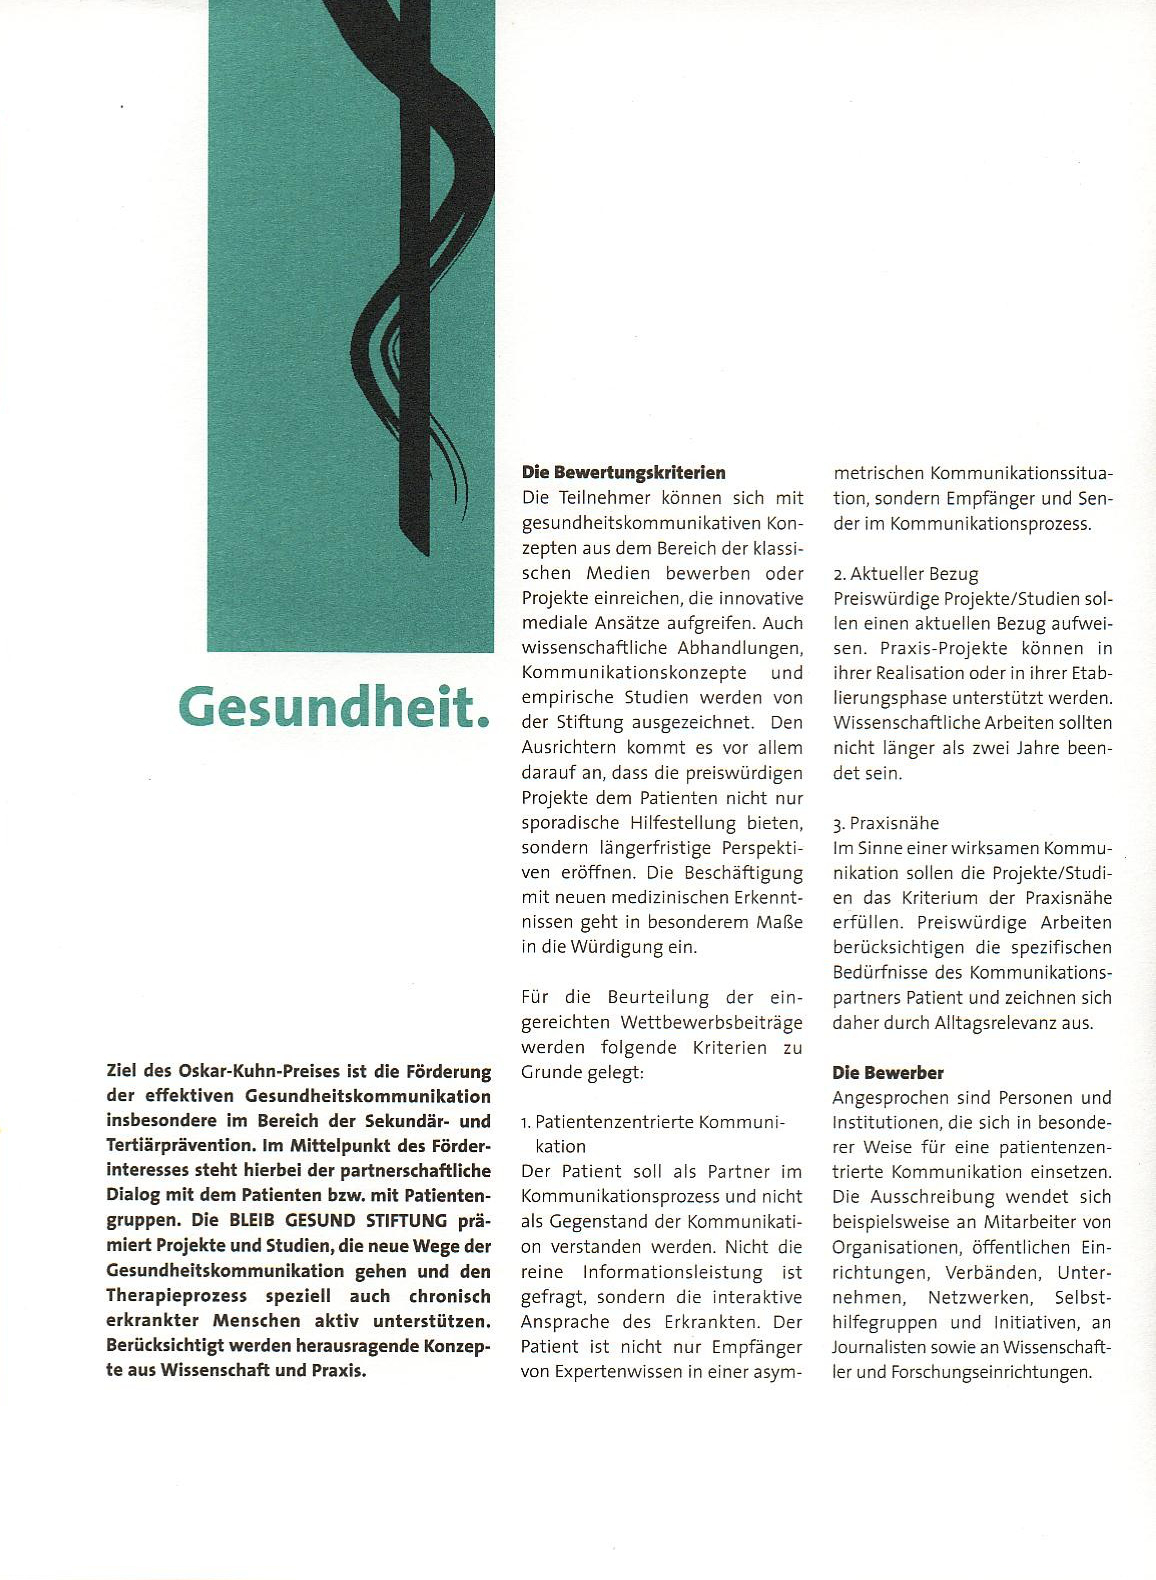 Oskar Kuhn Preis - BLEIB GESUND STIFTUNG - Rückseite